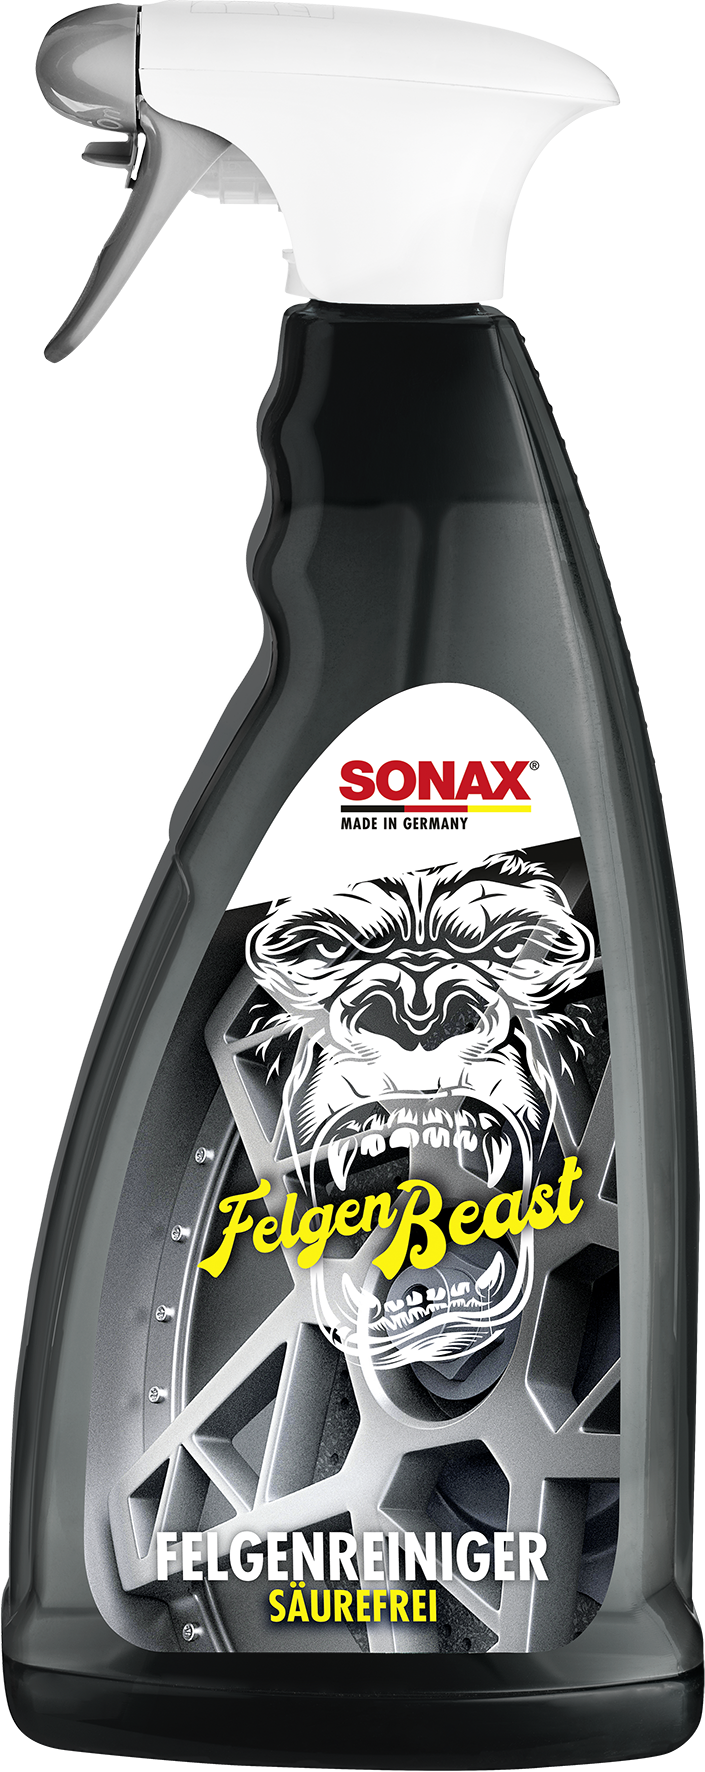 SONAX FelgenBeast - Weigola Hygienevertrieb